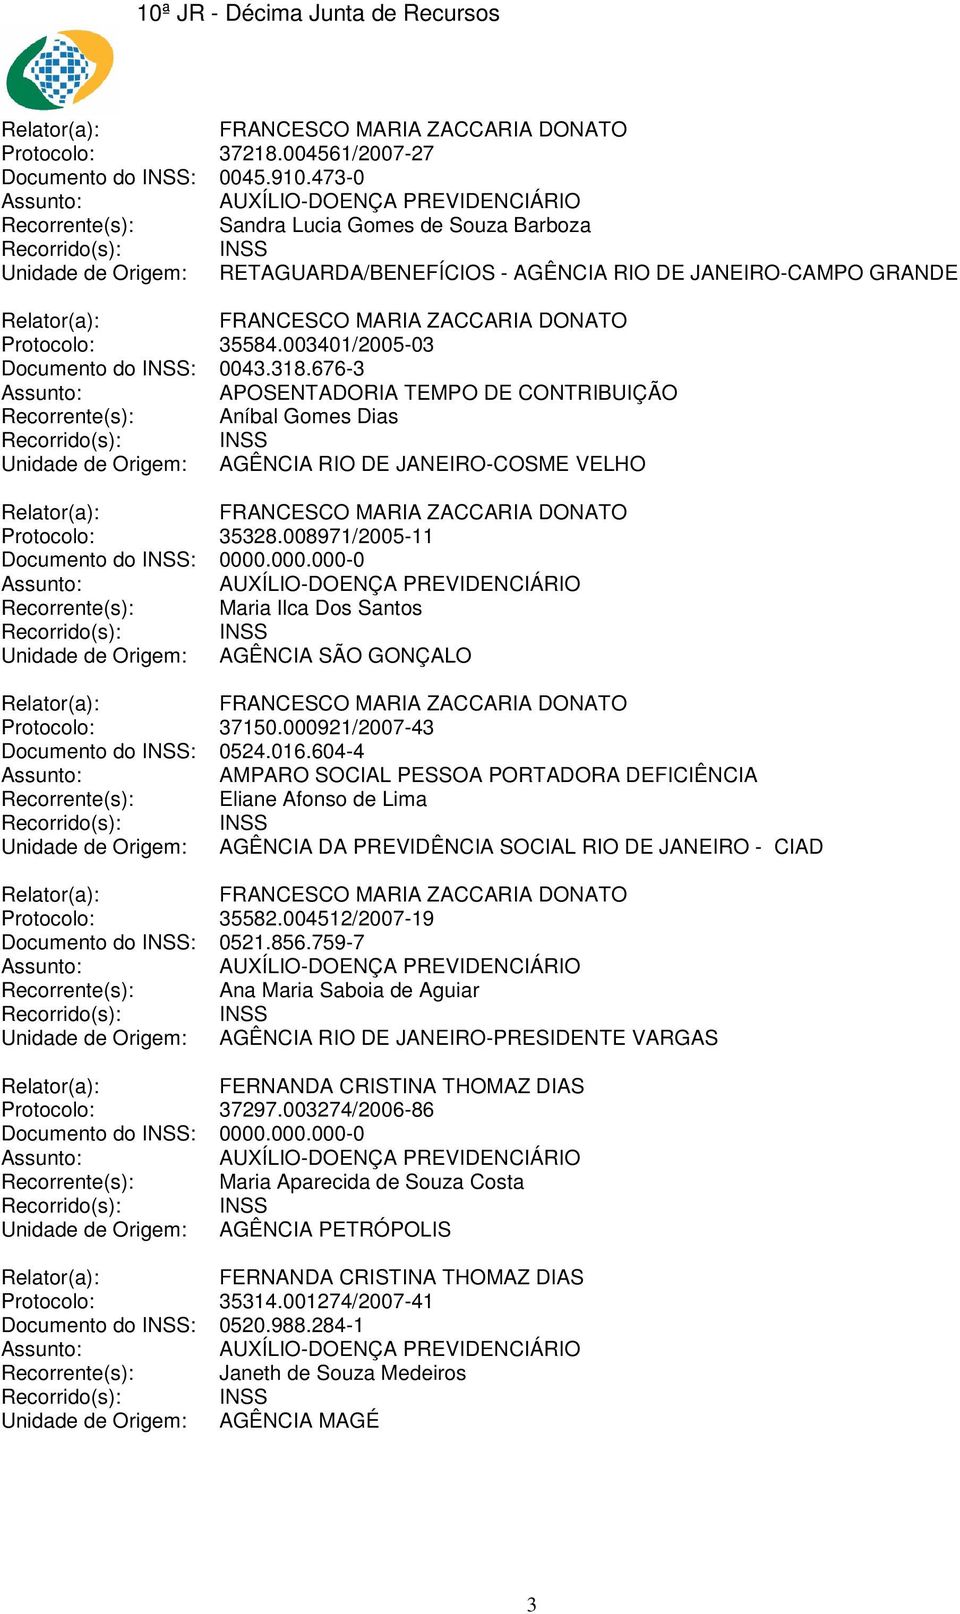 676-3 Recorrente(s): Aníbal Gomes Dias Unidade de Origem: AGÊNCIA RIO DE JANEIRO-COSME VELHO Protocolo: 35328.008971/2005-11 Documento do INSS: 0000